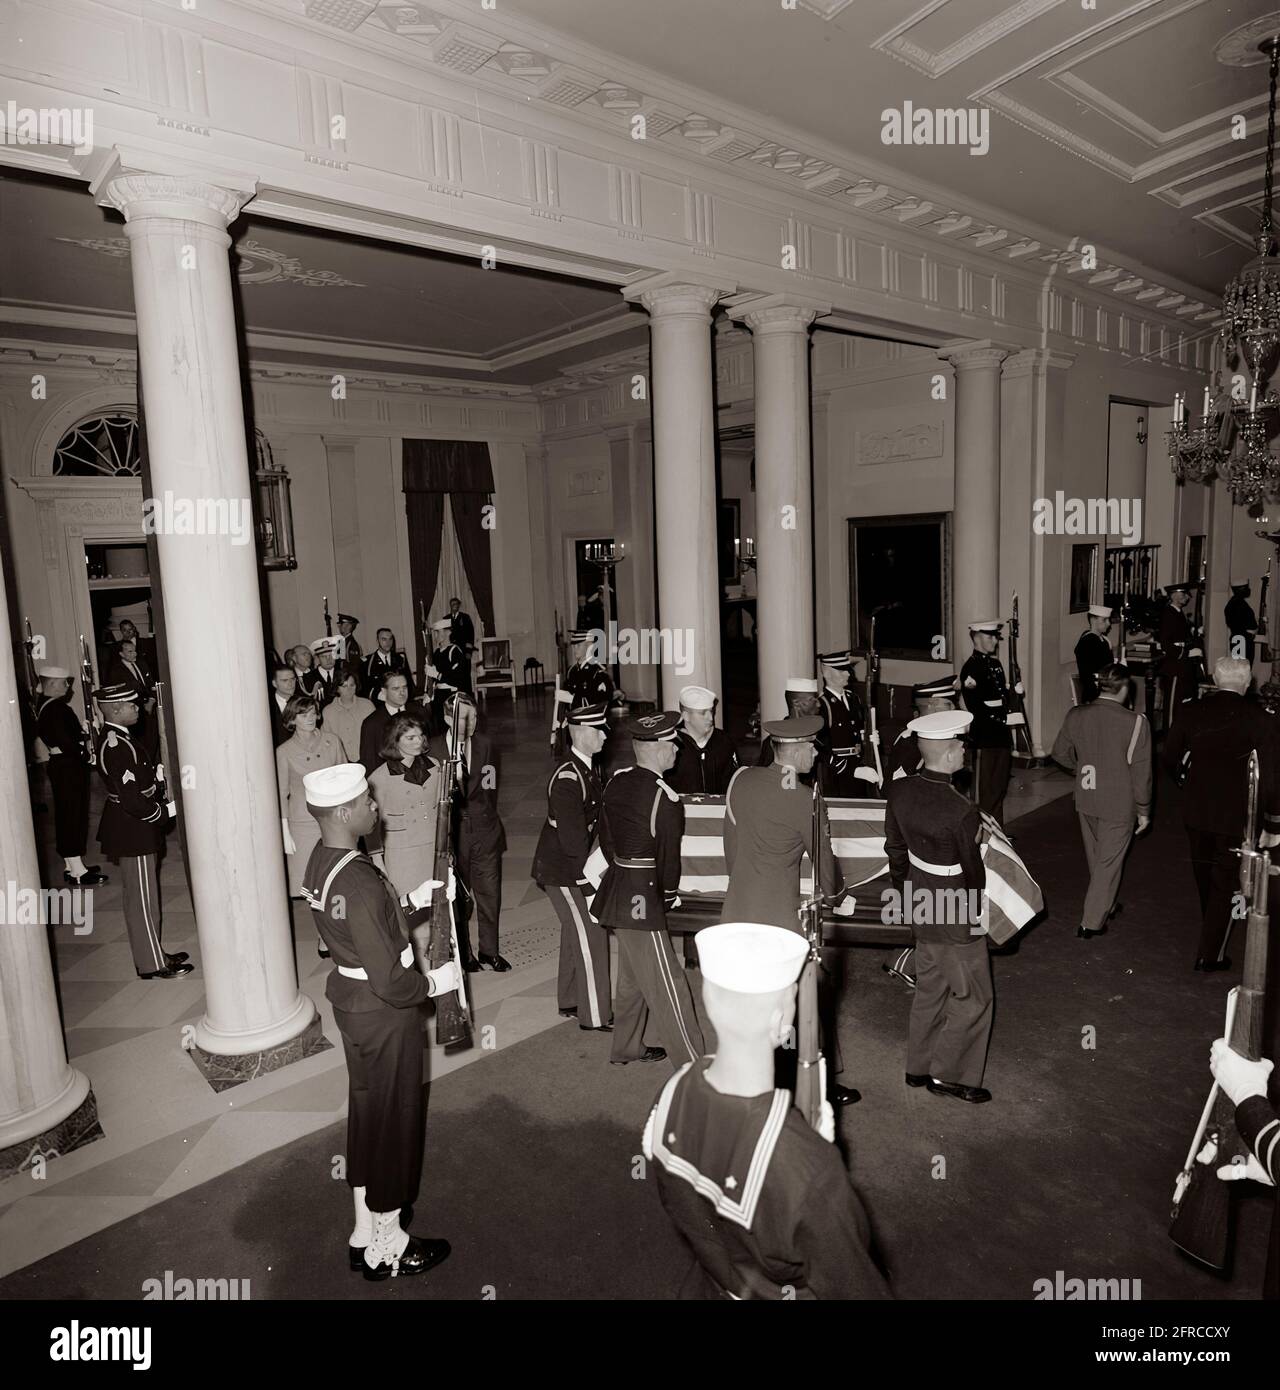 ST-C415-2-63 23 novembre 1963 funérailles d'État du président Kennedy : le corps du président Kennedy revient à la Maison Blanche Veuillez créditer « Cecil Stoughton. Photos de la Maison Blanche. John F. Kennedy Presidential Library and Museum, Boston Banque D'Images